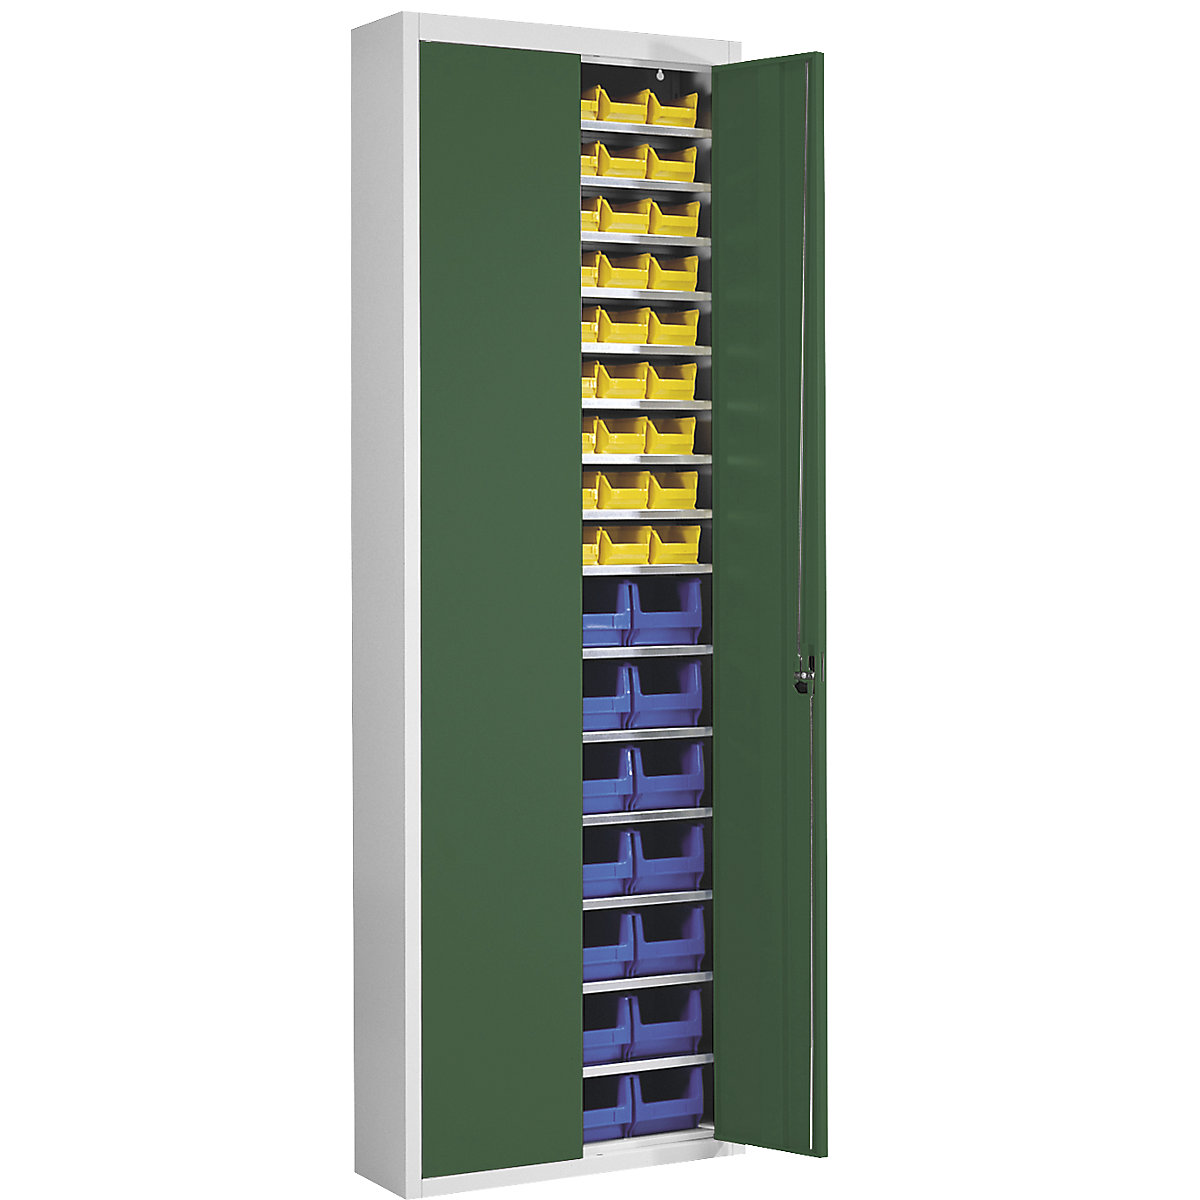 Skladová skříň s přepravkami s viditelným obsahem – mauser, v x š x h 2150 x 680 x 280 mm, dvoubarevné, korpus šedý, dveře zelené, 82 přepravek-15